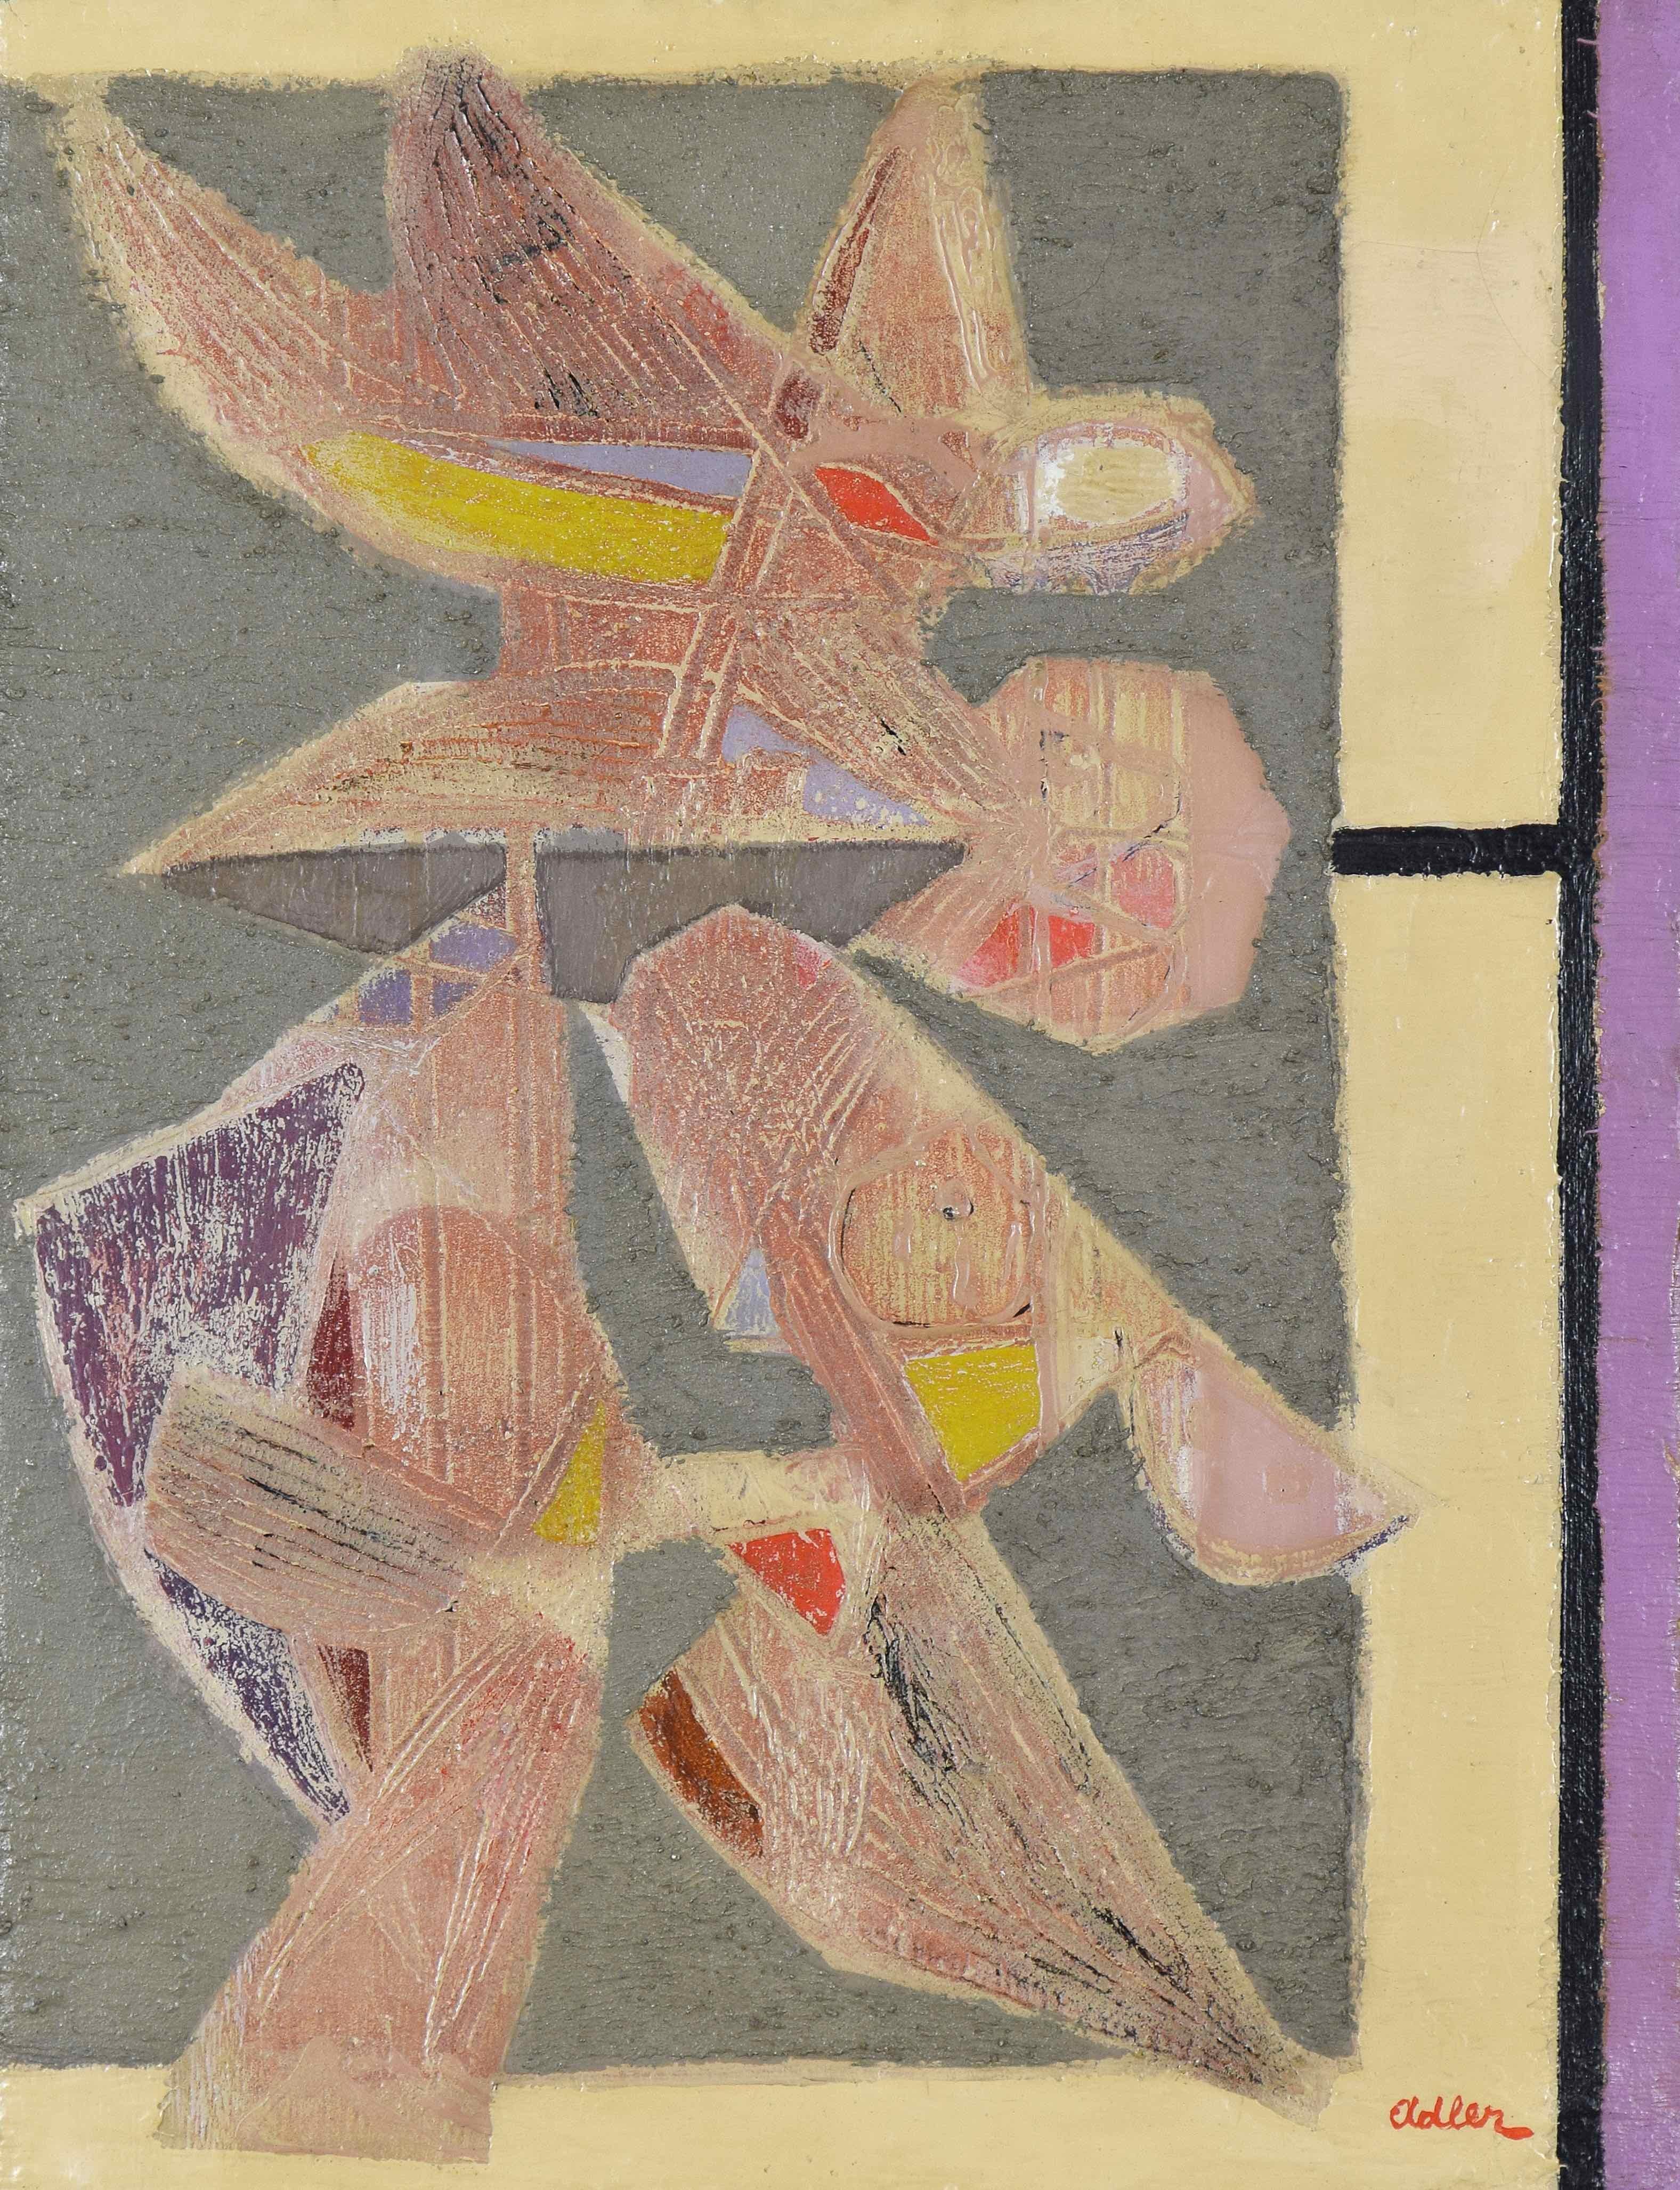 Oiseaux de Jankel Adler (1895-1949)
Huile et ciment sur toile
61.4 x 46.4 cm (24¹/₈ x 18¹/₄ pouces)
Signé en bas à droite, Adler.
Exécuté en 1948

Provenance
Galerie Charles Lienhard, Zürich, 1959
Gimpel Fils Gallery, Londres
Denham Gallery,